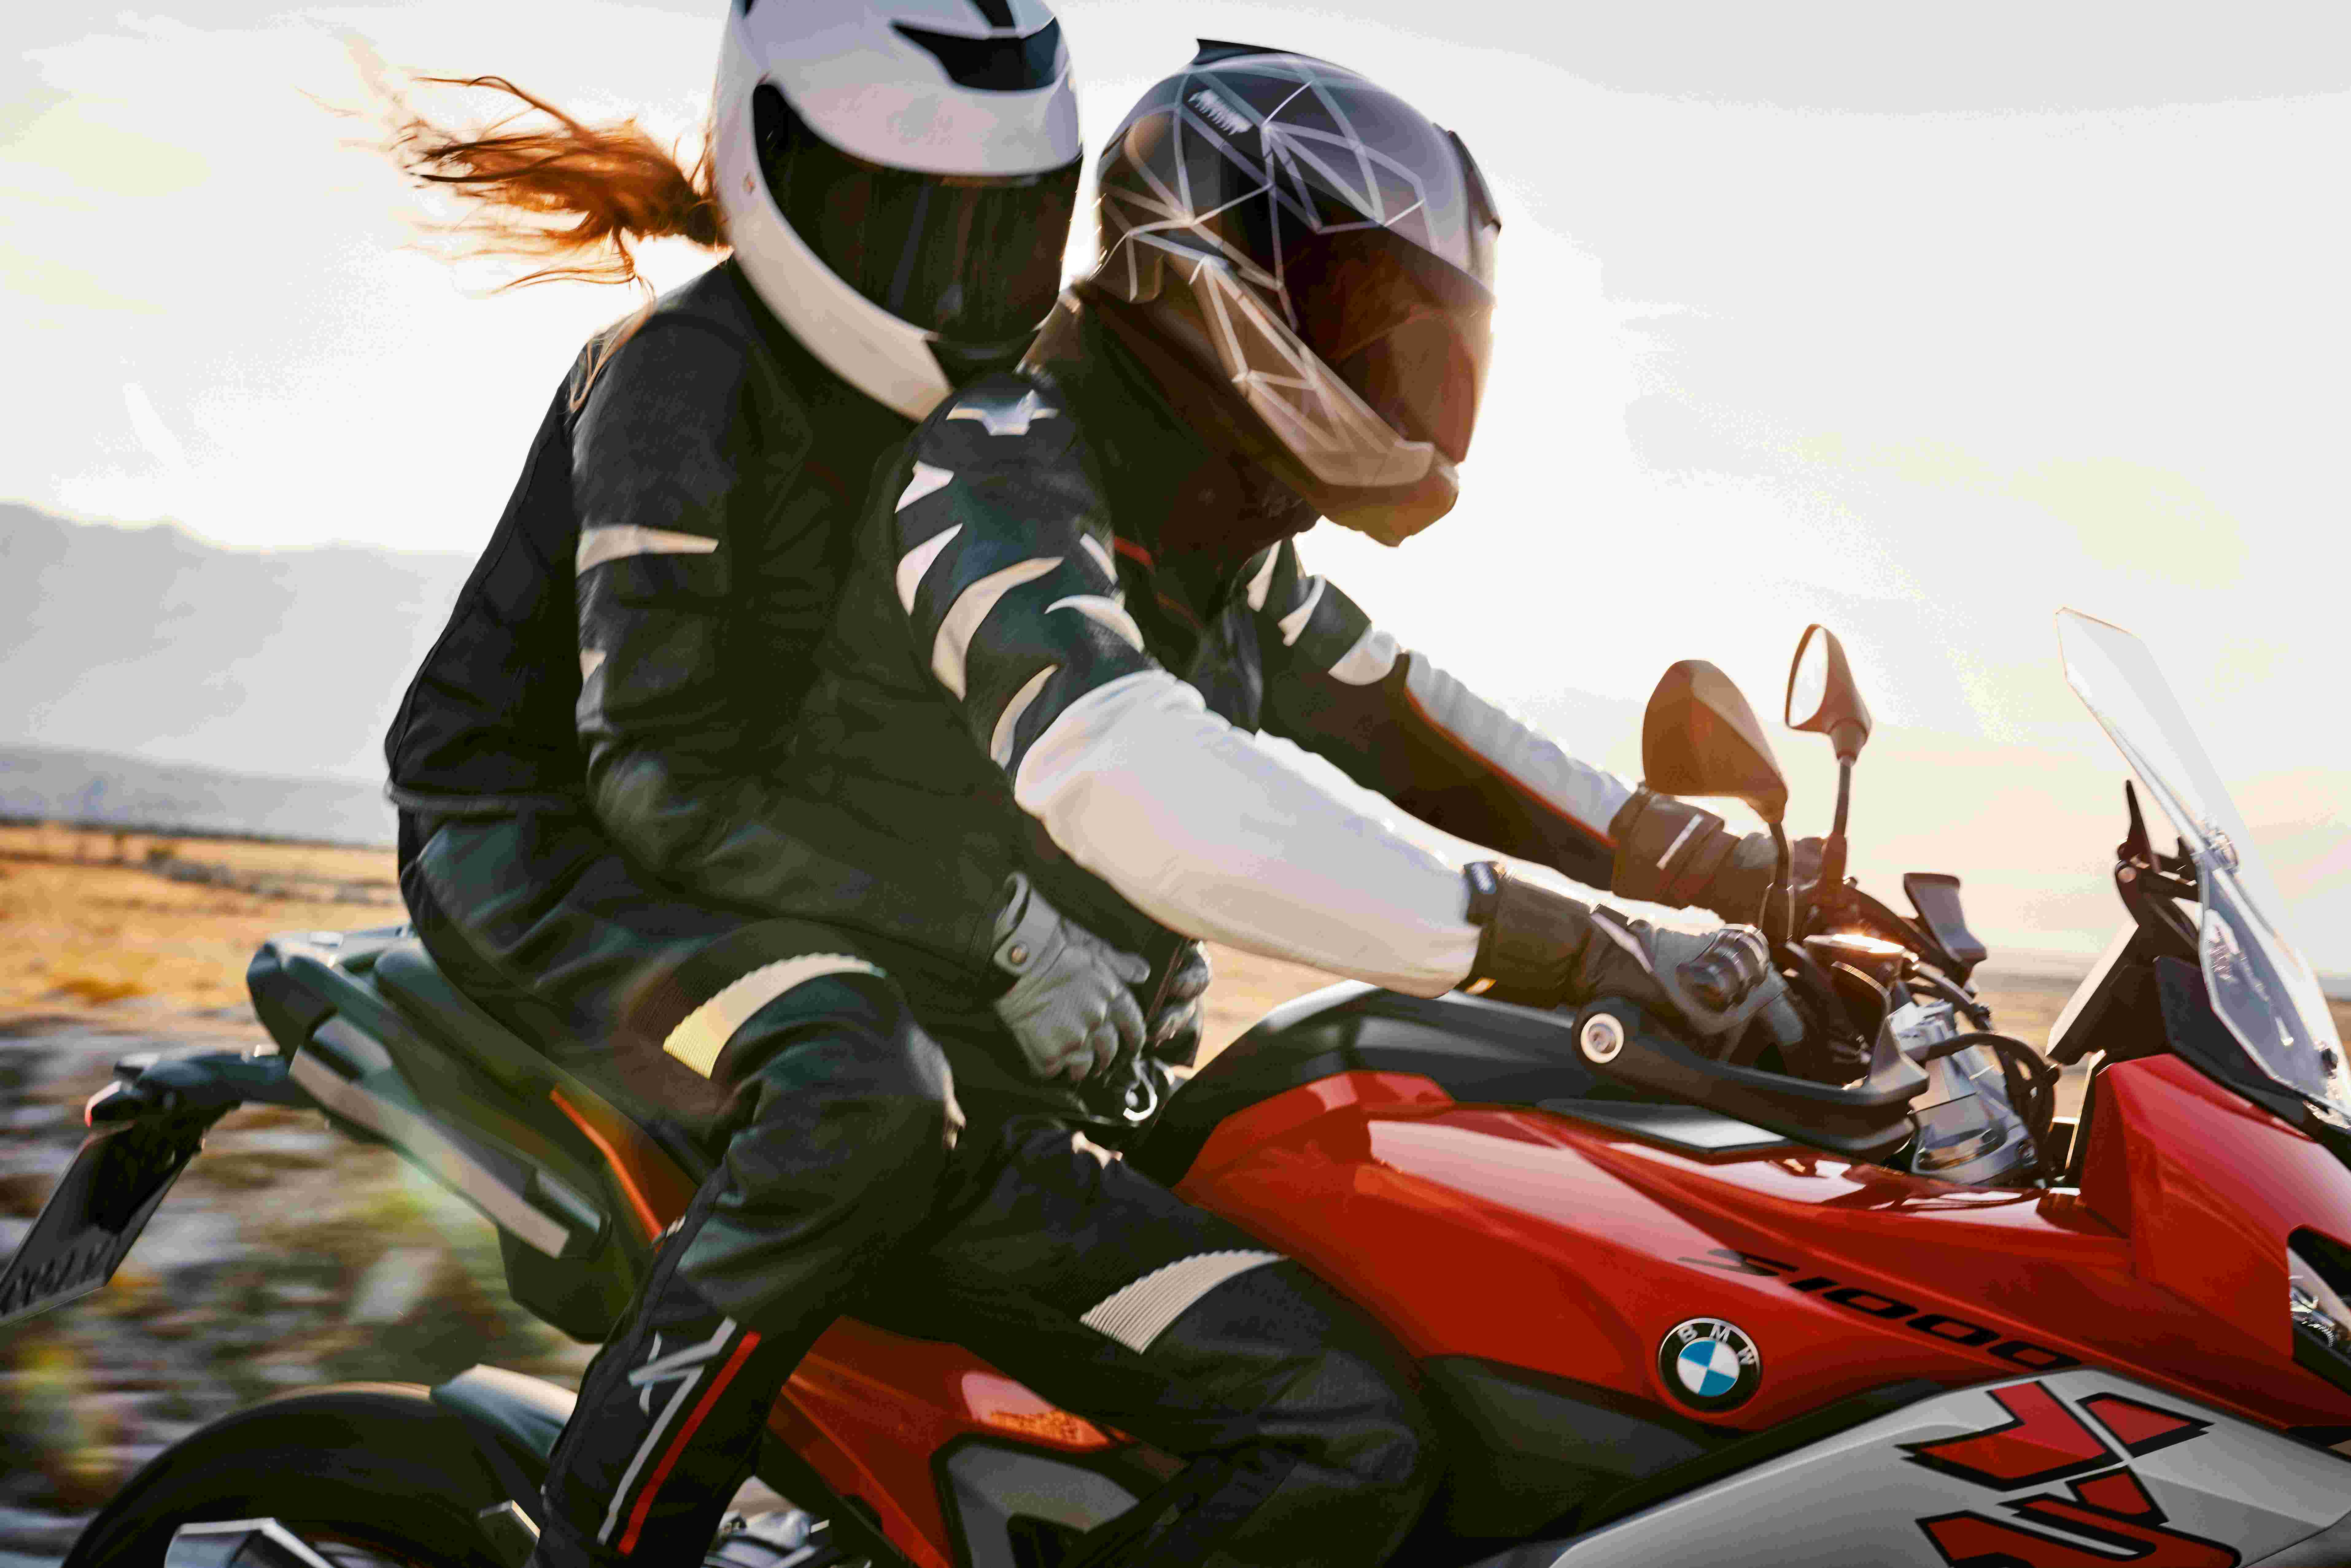 打造数字化骑行新体验bmw摩托车持续创新引领新时代骑行生活 天量摩托网